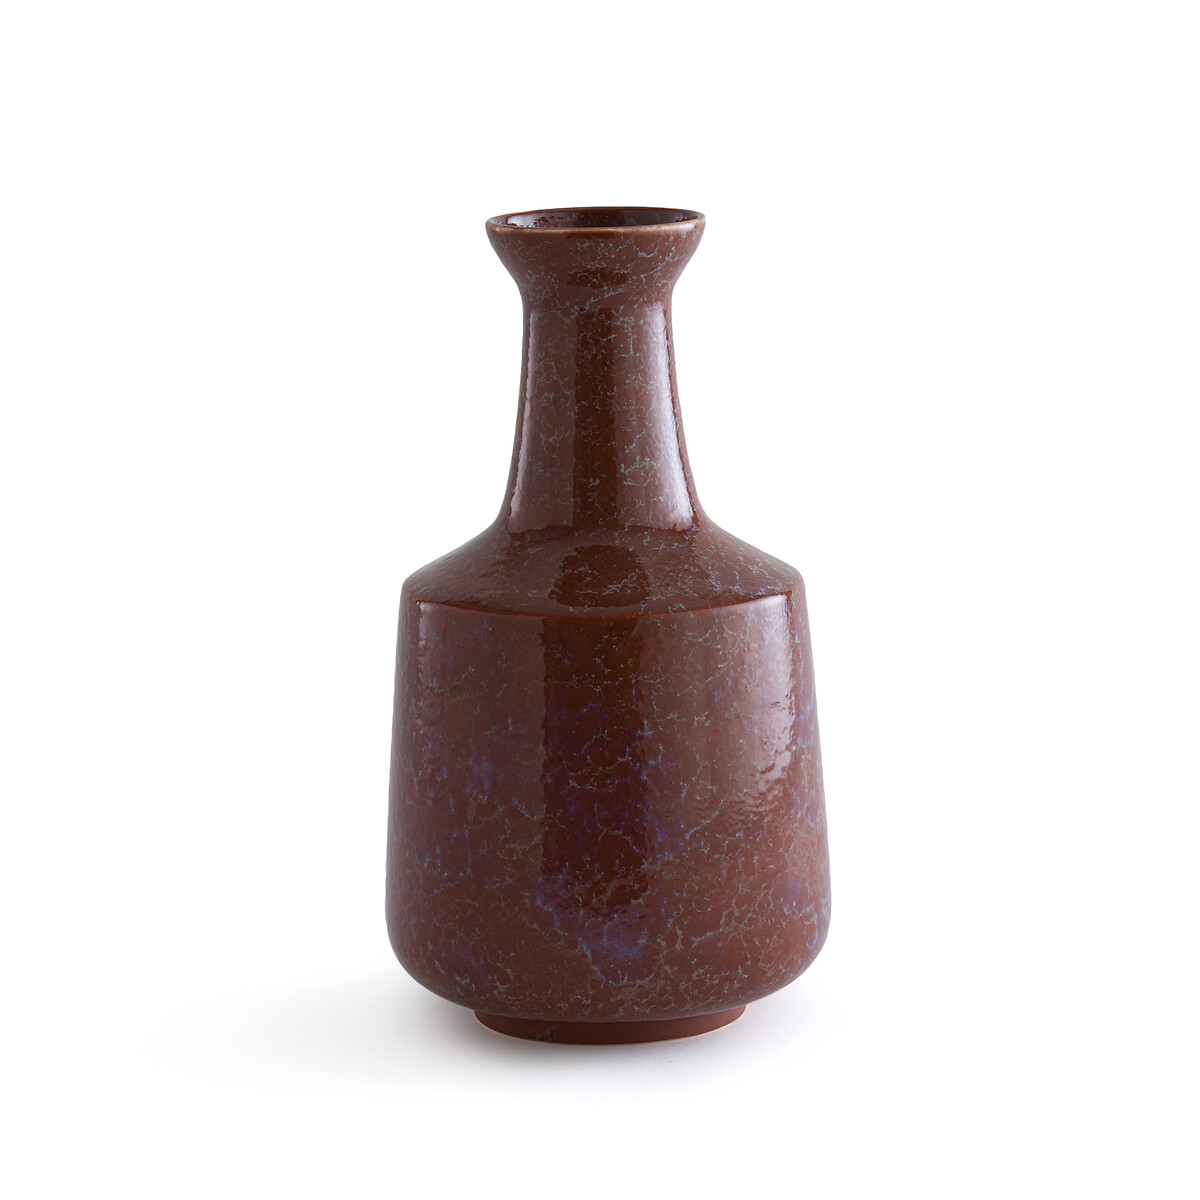 ваза из керамики маленькая модель almada единый размер бежевый Ваза из глазурованной керамики Medine единый размер каштановый